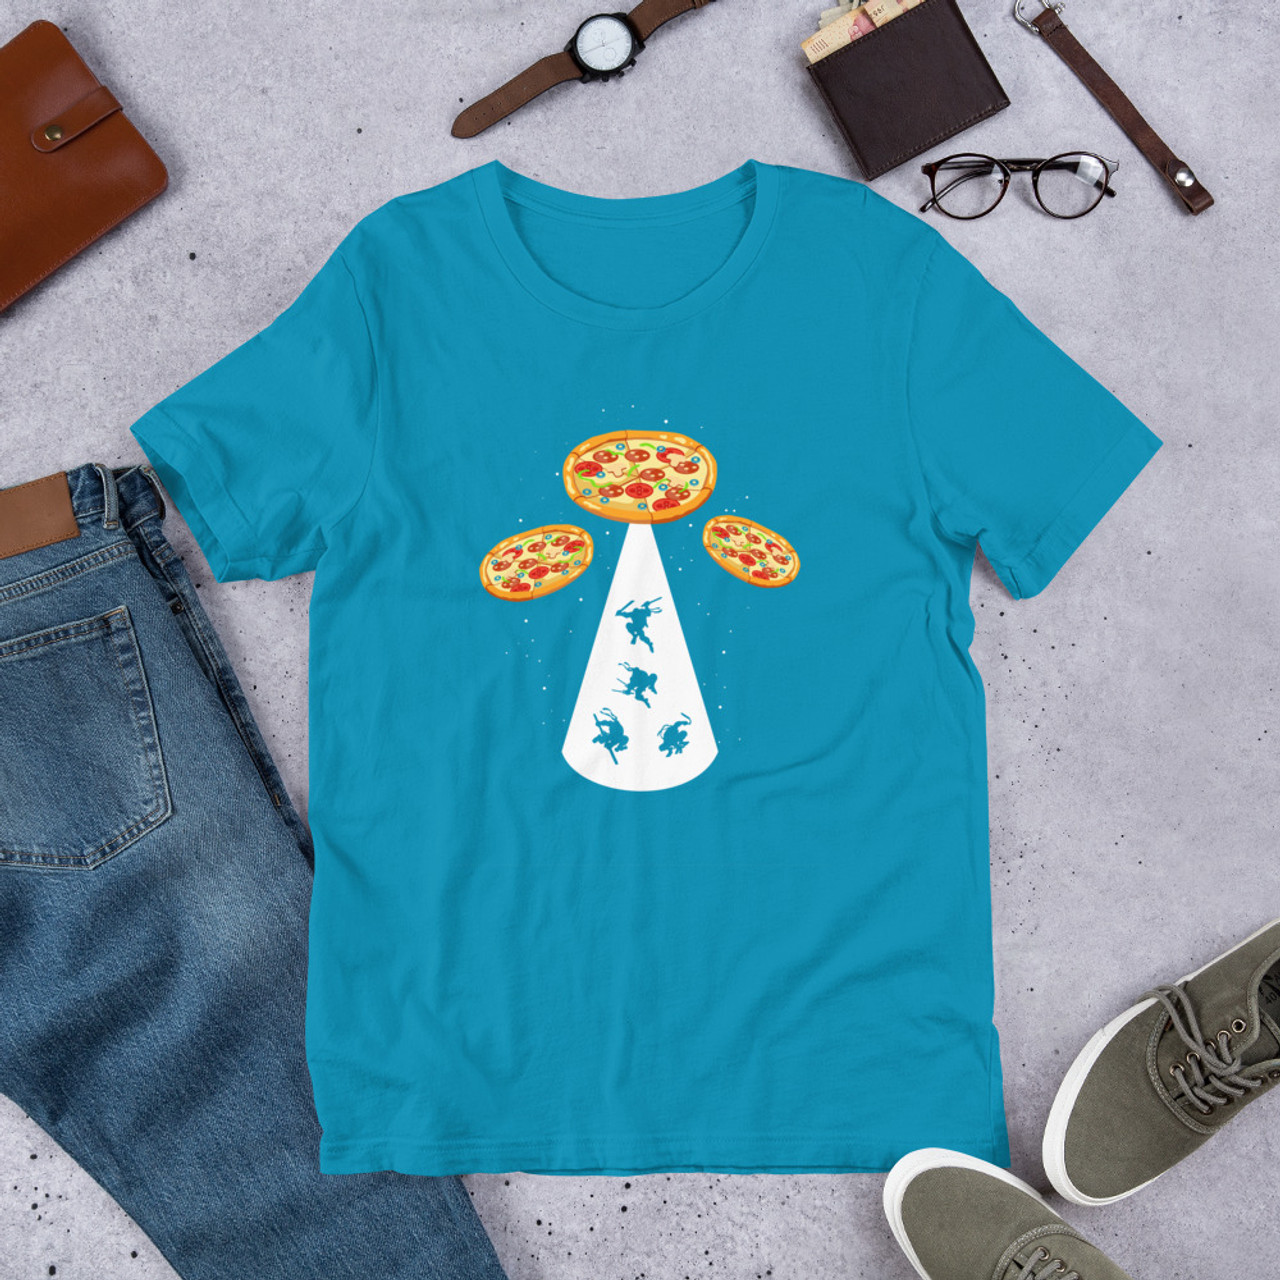 Aqua T-Shirt - Bella + Canvas 3001 Pizza UFO